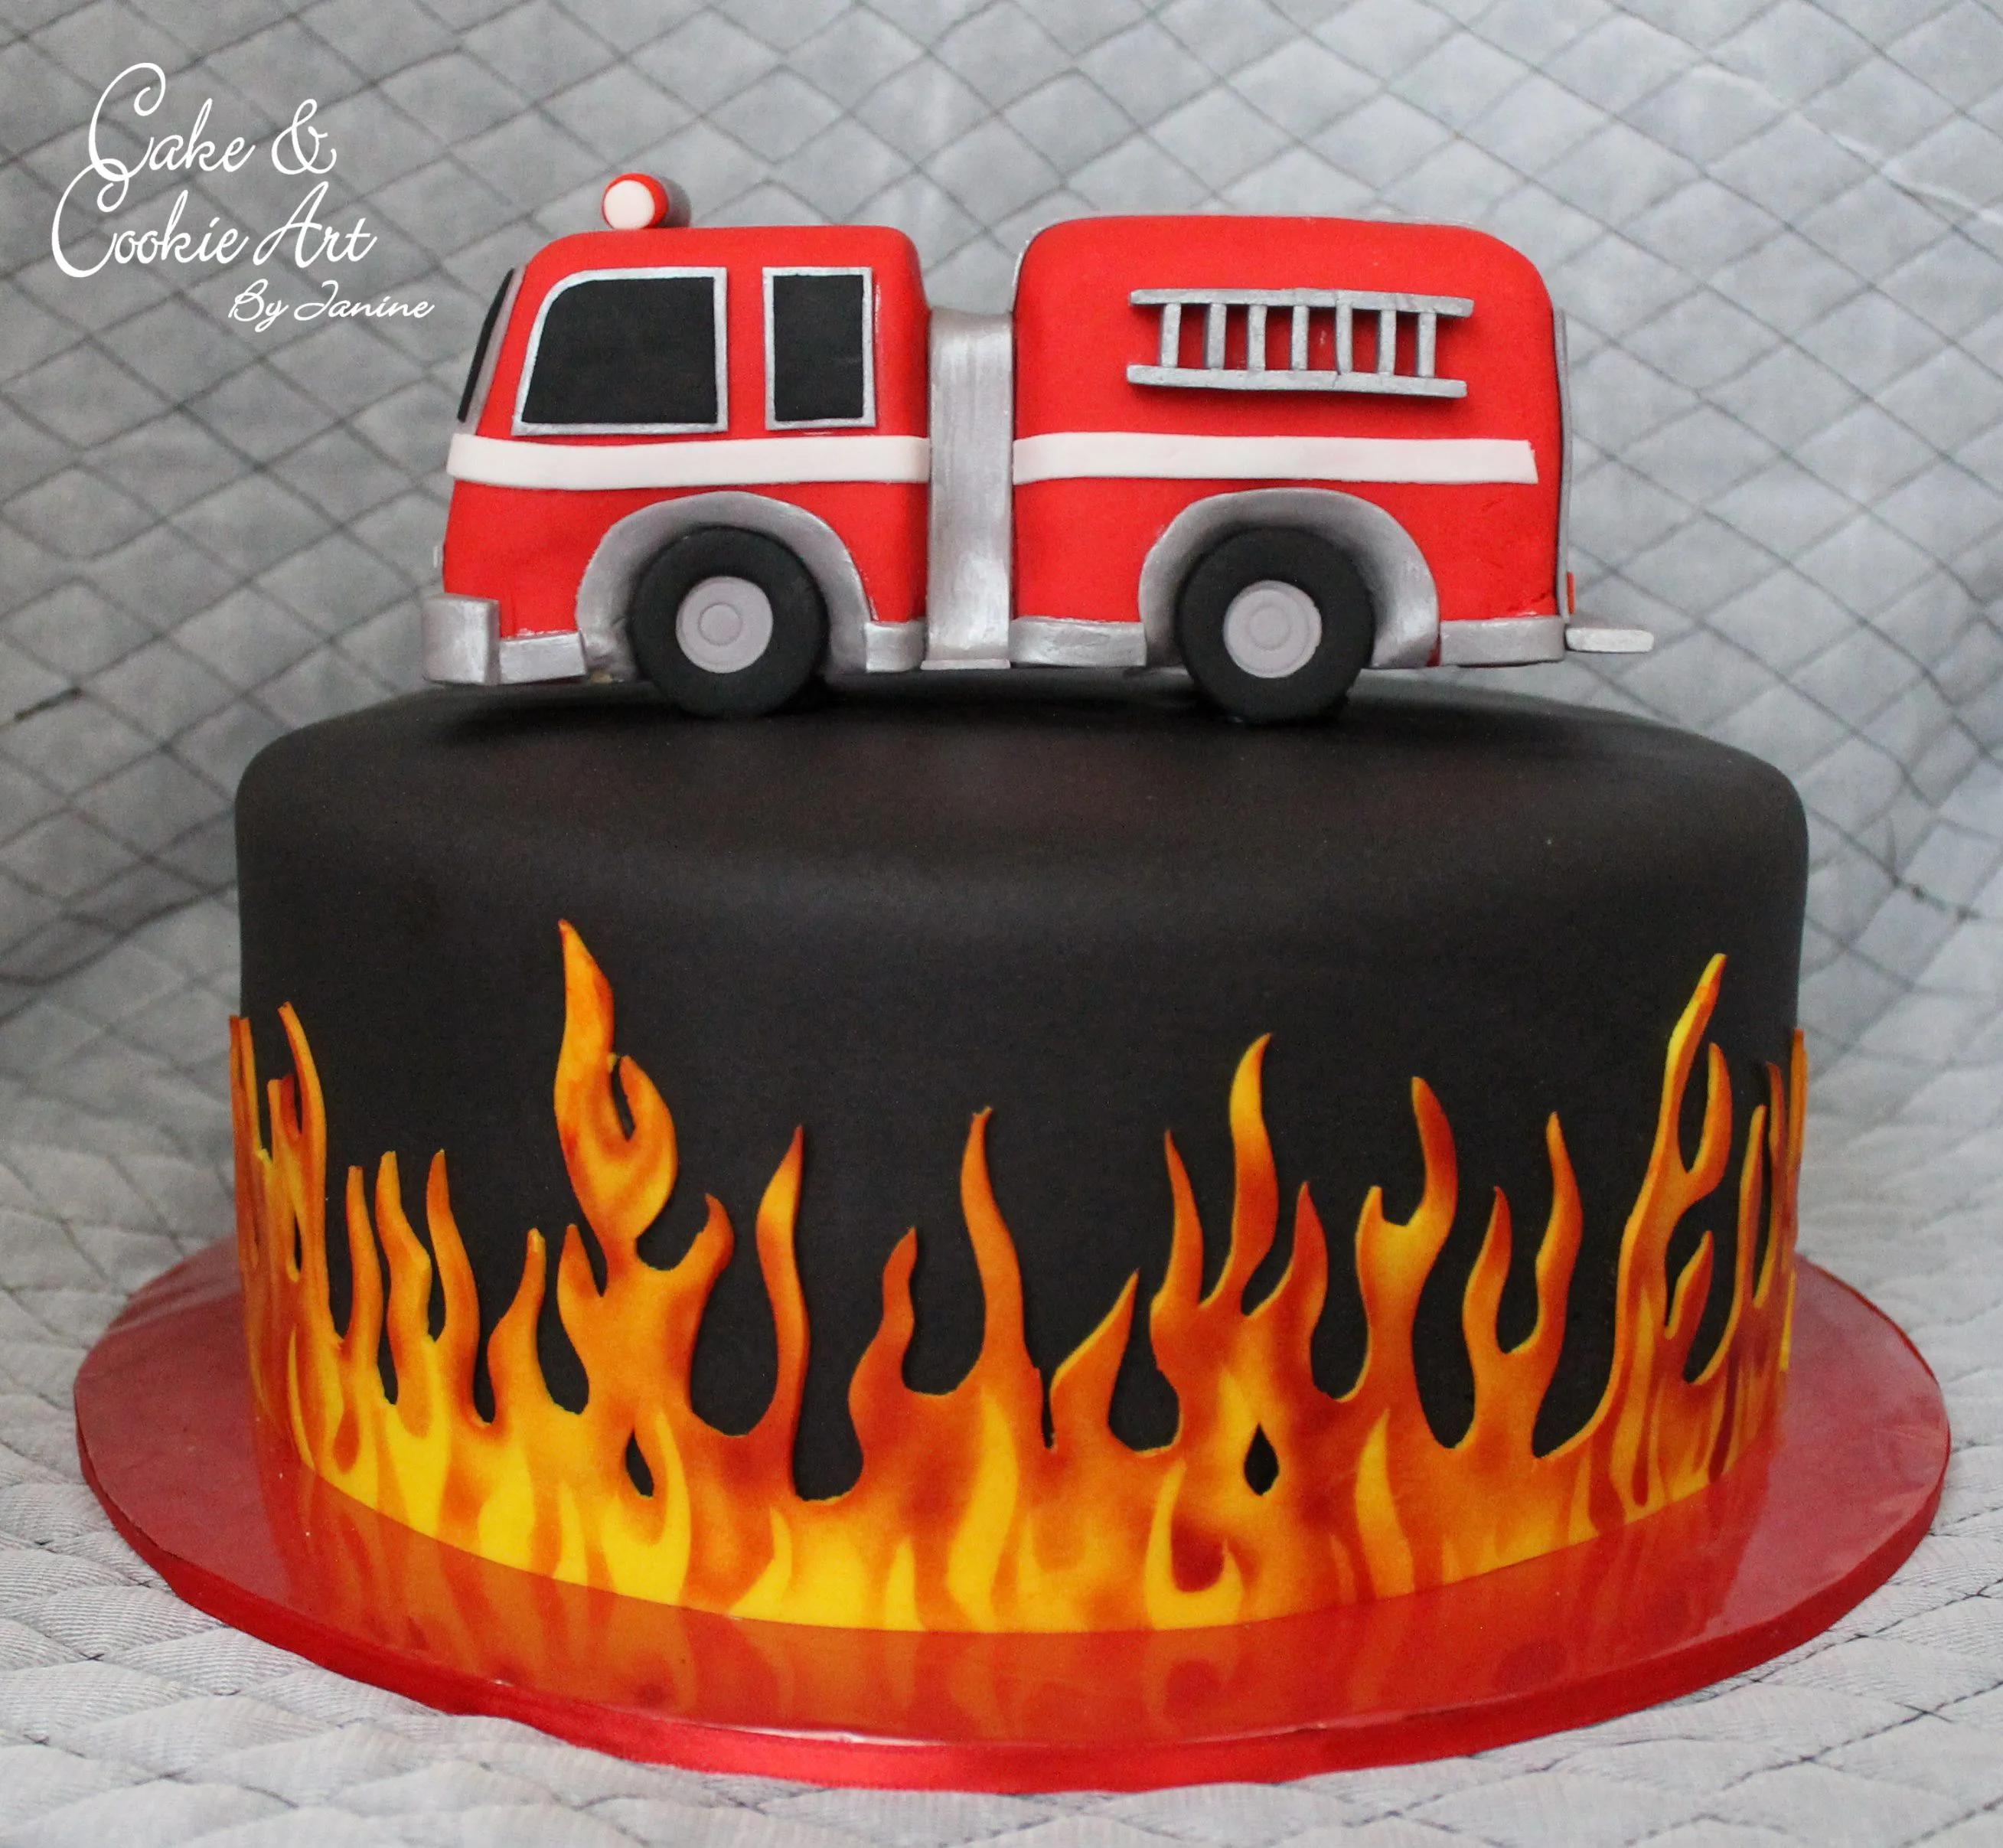 Cake for a firefighter | Firefighter birthday cakes, Firefighter cake ...